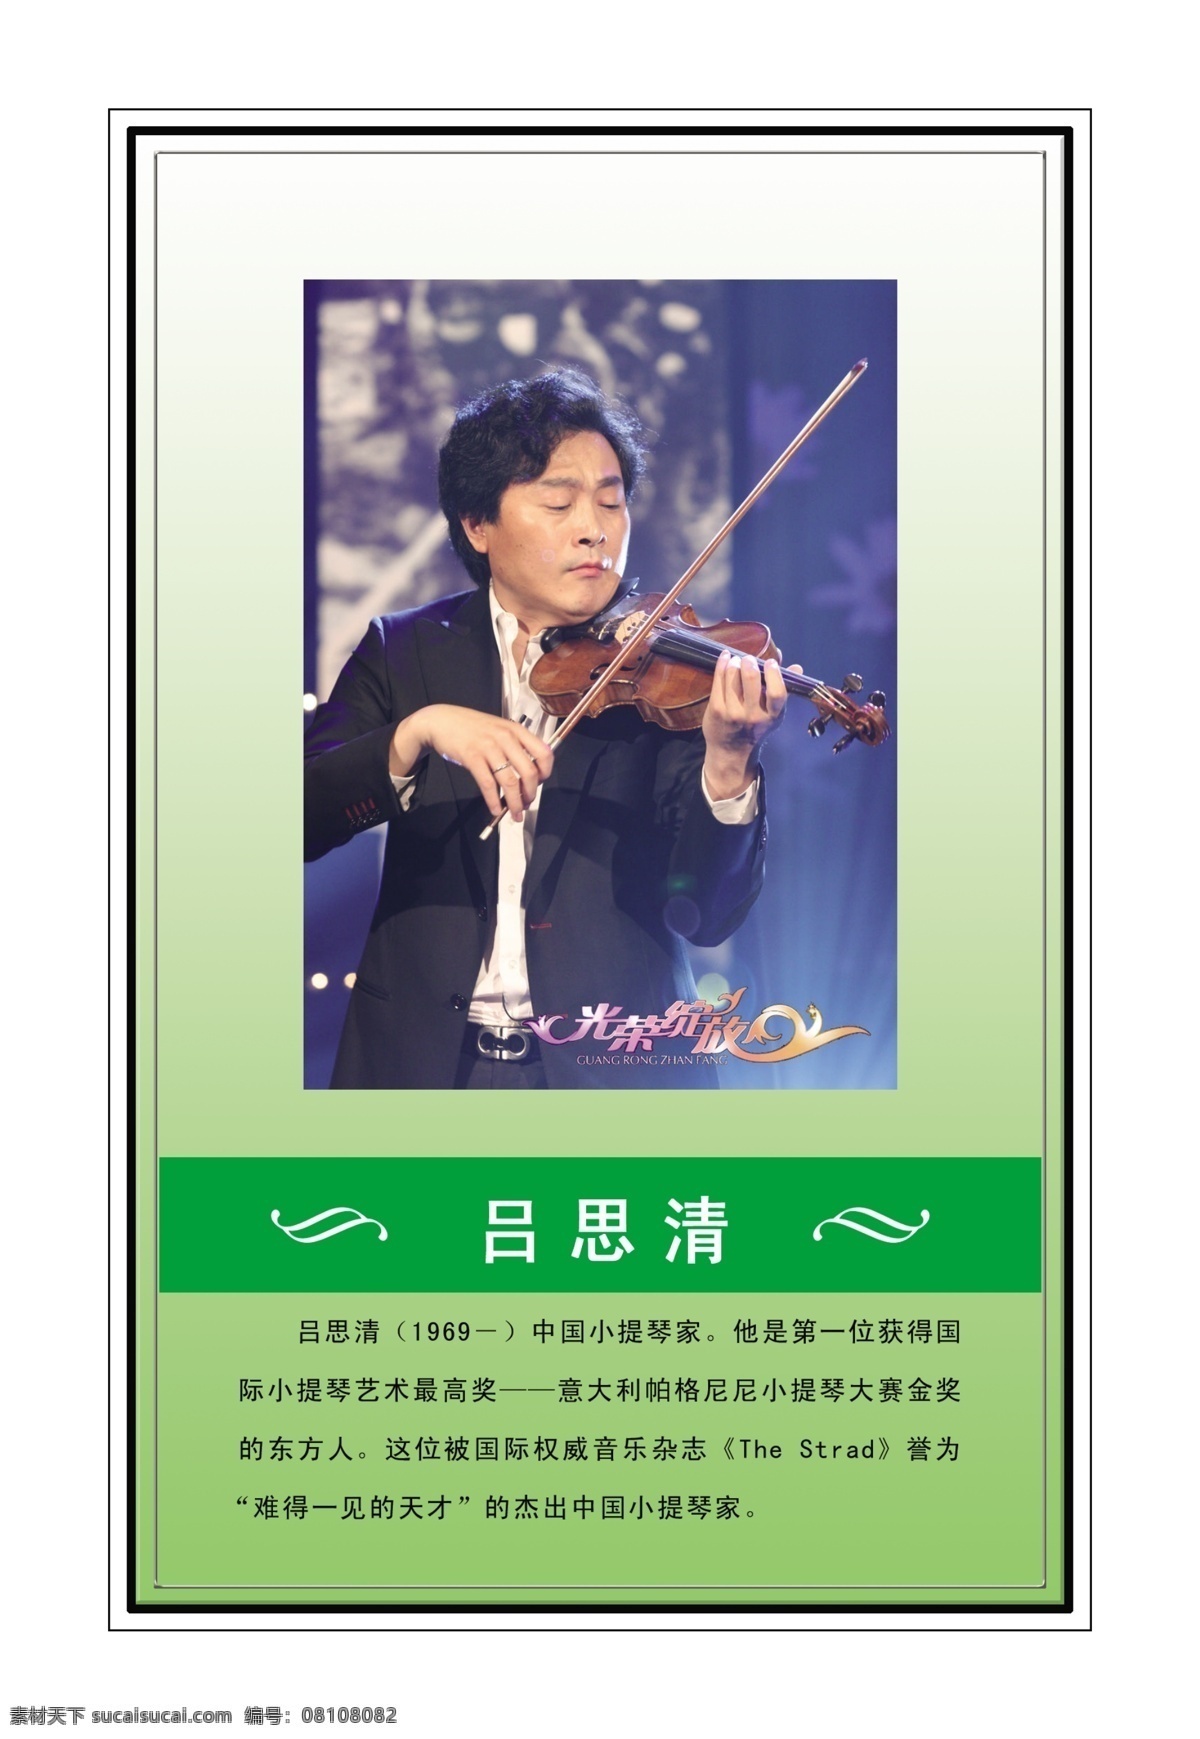 中国音乐家 黑色边框 绿色渐变背景 草绿色色块 音乐符号 吕思清 及其 简介 展板模板 广告设计模板 源文件